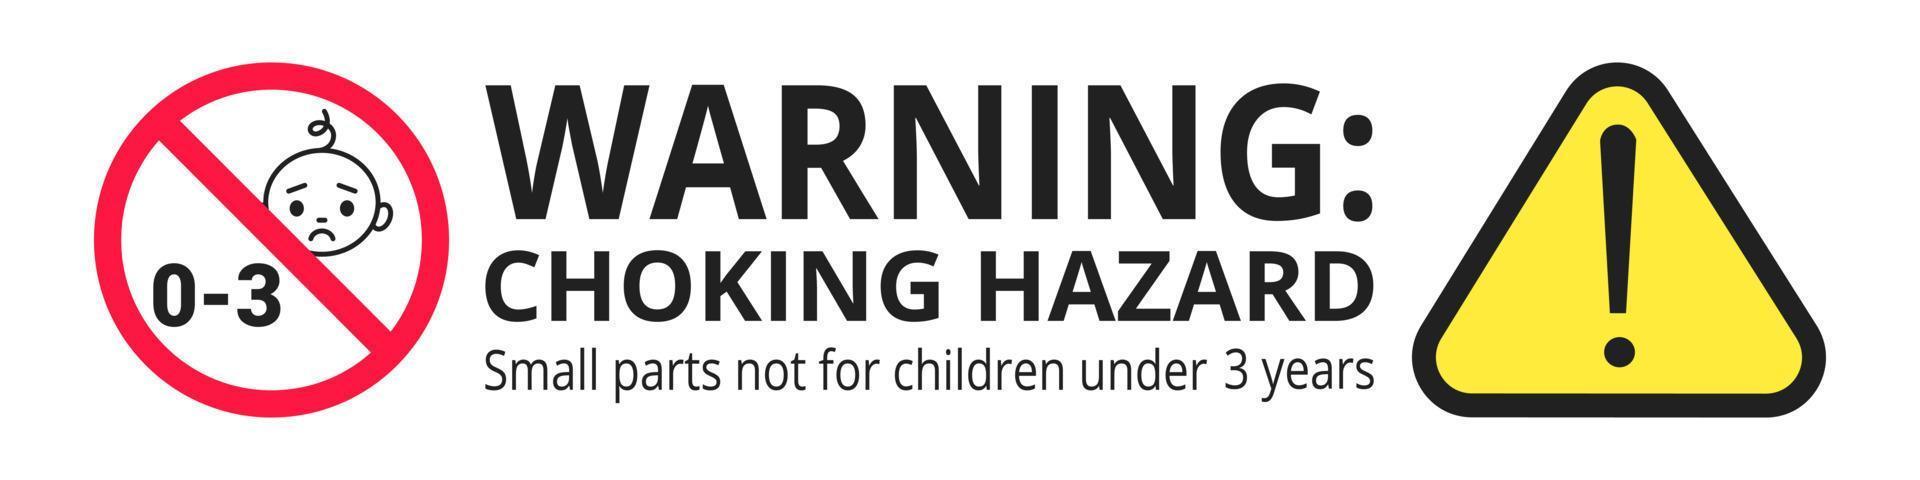 pegatina de señal prohibida de peligro de asfixia no adecuada para niños menores de 3 años aislado en ilustración de vector de fondo blanco. triángulo de advertencia, peligro de bordes afilados y piezas pequeñas.